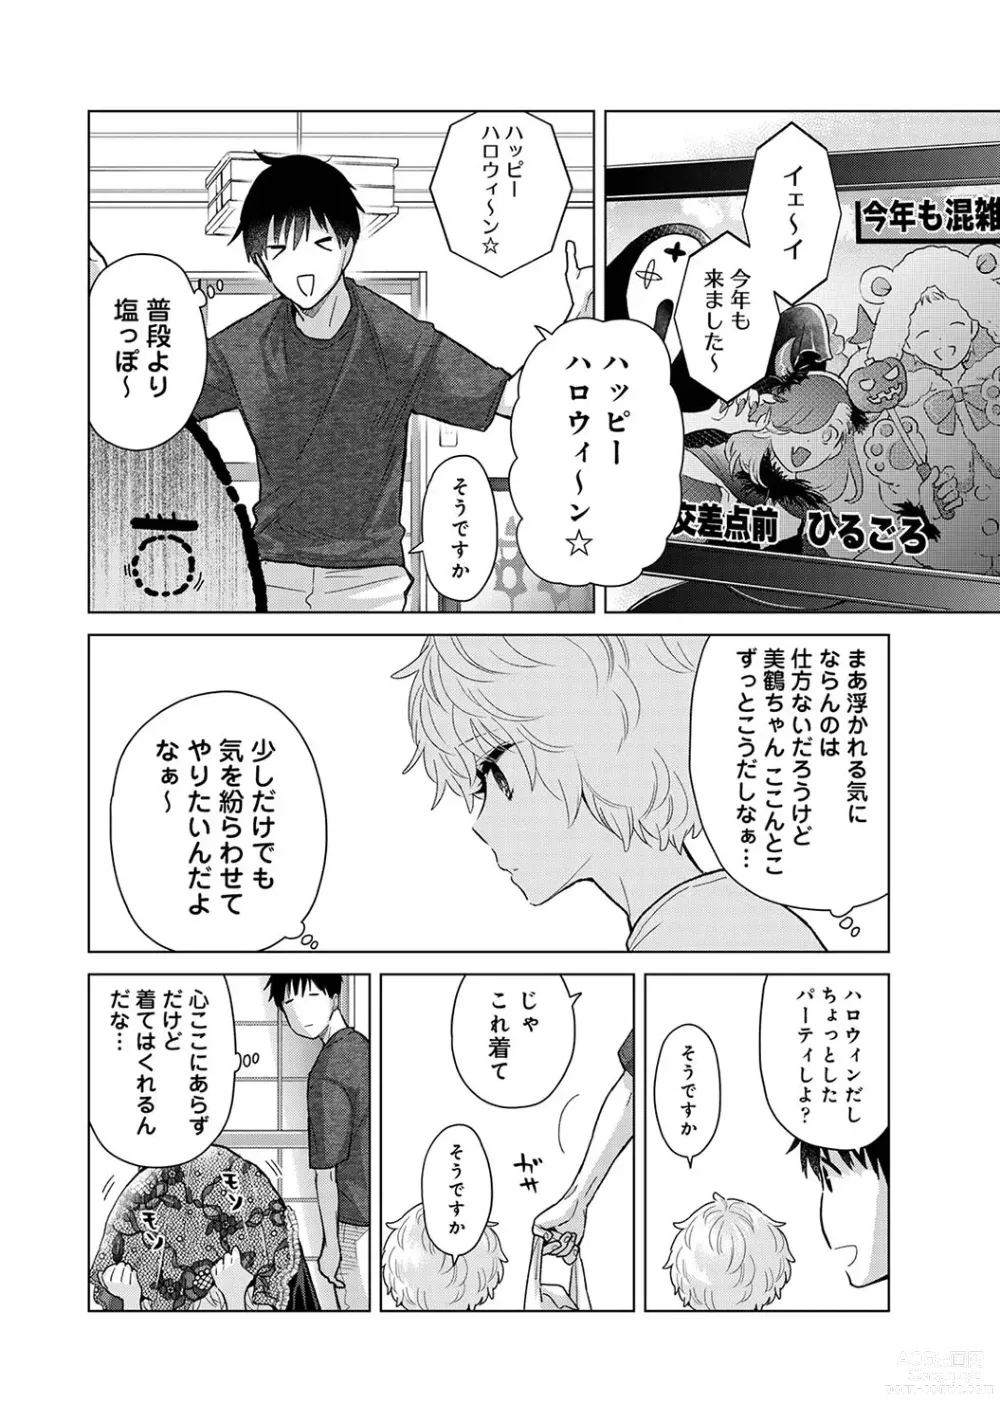 Page 987 of manga Noraneko Shoujo to no Kurashikata Ch. 1-41